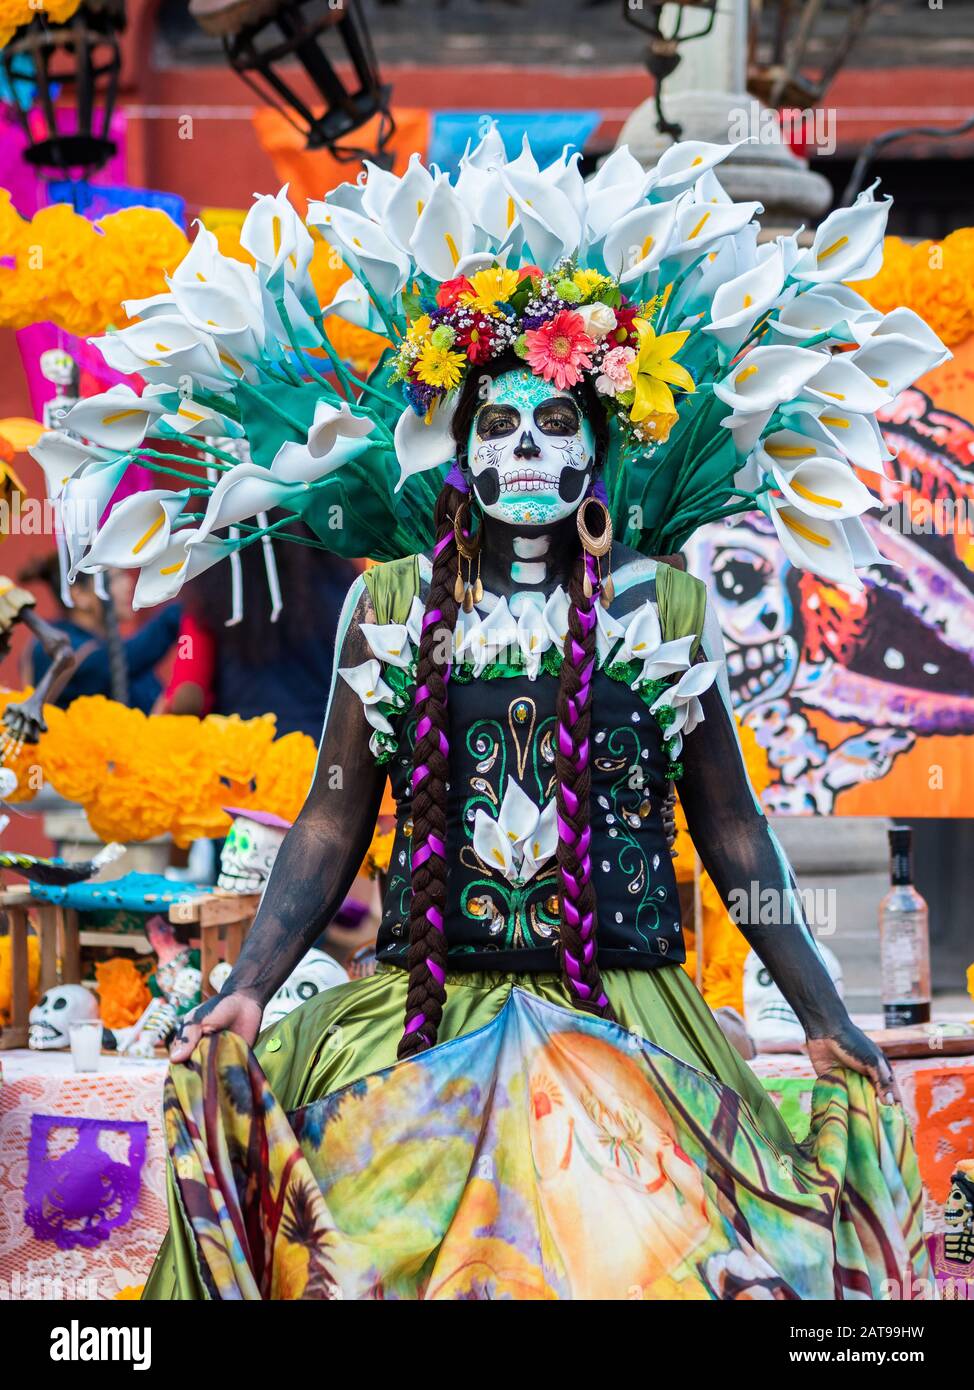 Portrait d'une femme avec de beaux costumes sur le thème de la Journée des morts et maquillage du crâne dans les rues de Guanajuato, au Mexique. Banque D'Images